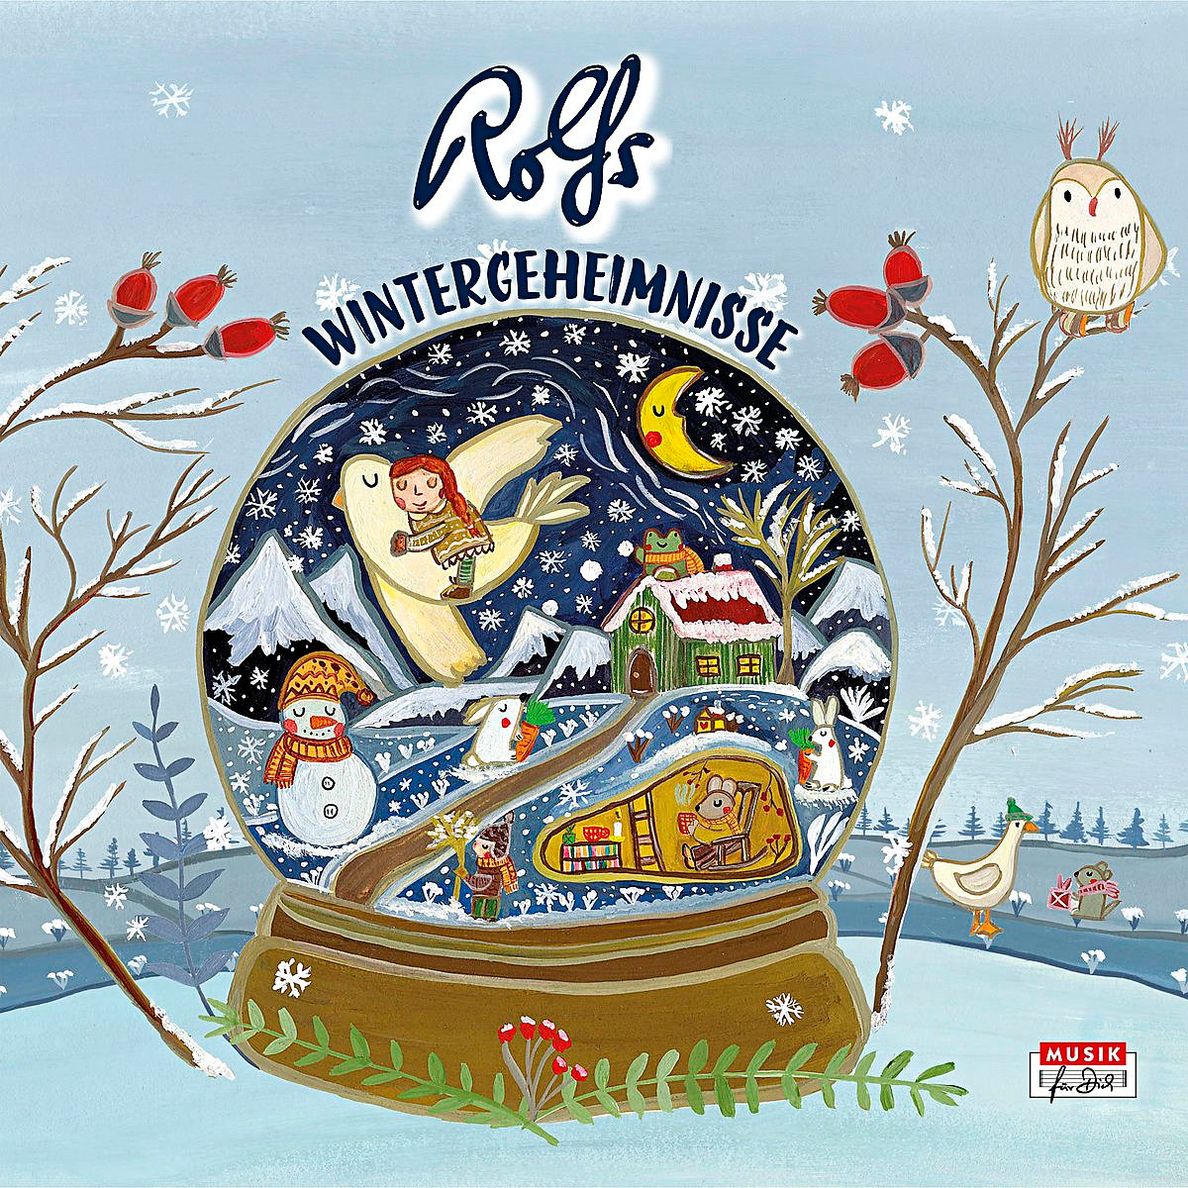 Rolfs Wintergeheimnisse CD von Rolf Zuckowski bei Weltbild.de